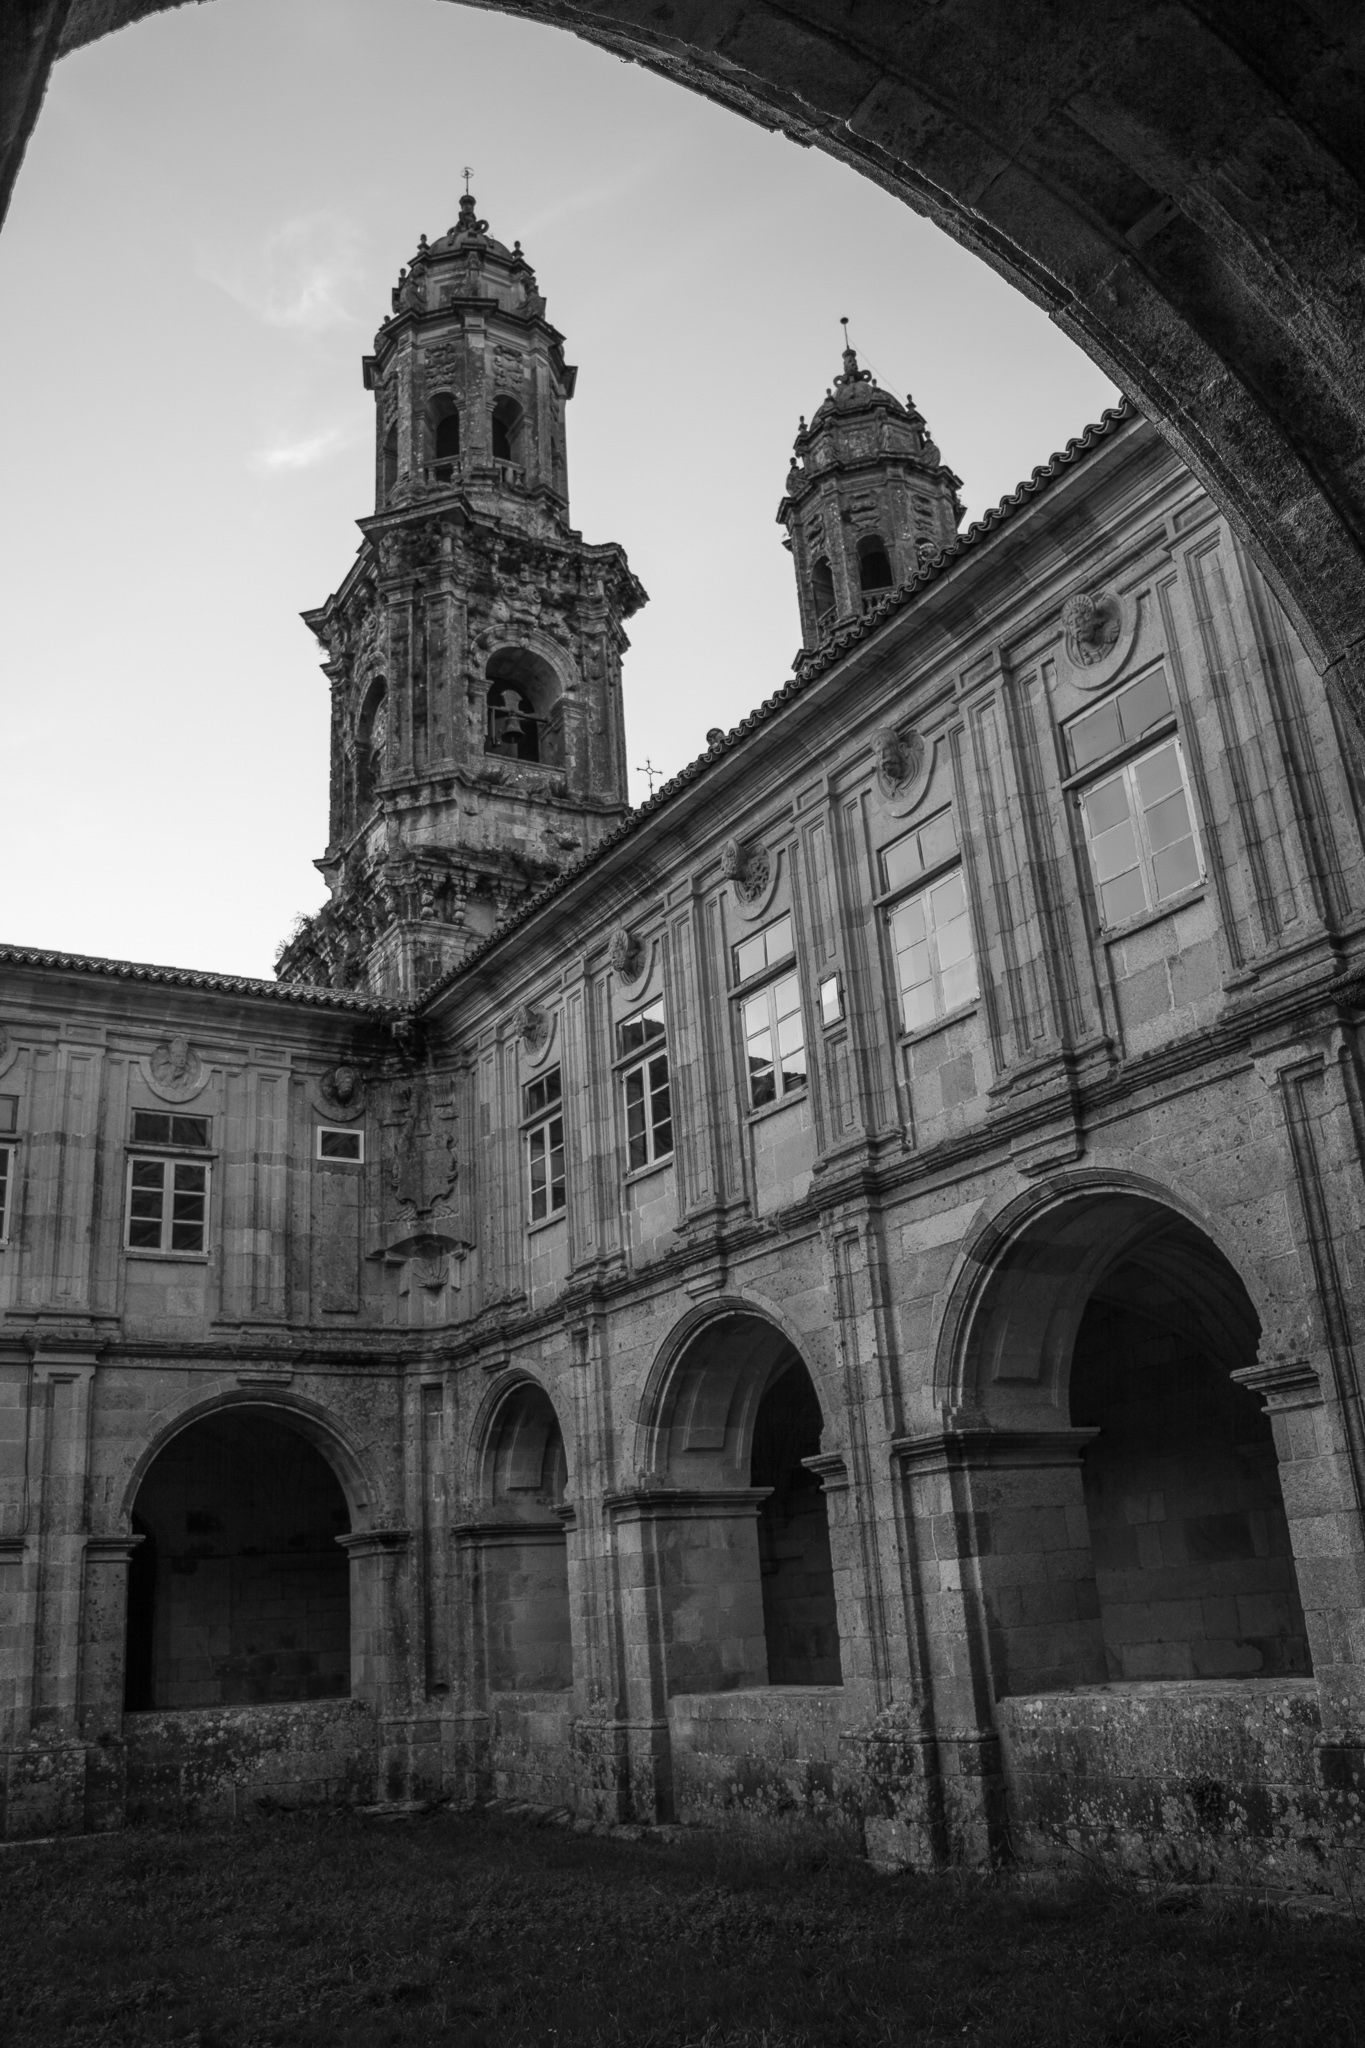 El monasterio de Santa María de Sobrado dos Monxes, municipio de Sobrado, es uno de los principales monasterios medievales de Galicia.<br><br> Tras las reformas de los siglos XVI al XVII se convierte también en uno de los principales monumentos del barroco gallego. Declarado Monumento Histórico Artístico en 1931.